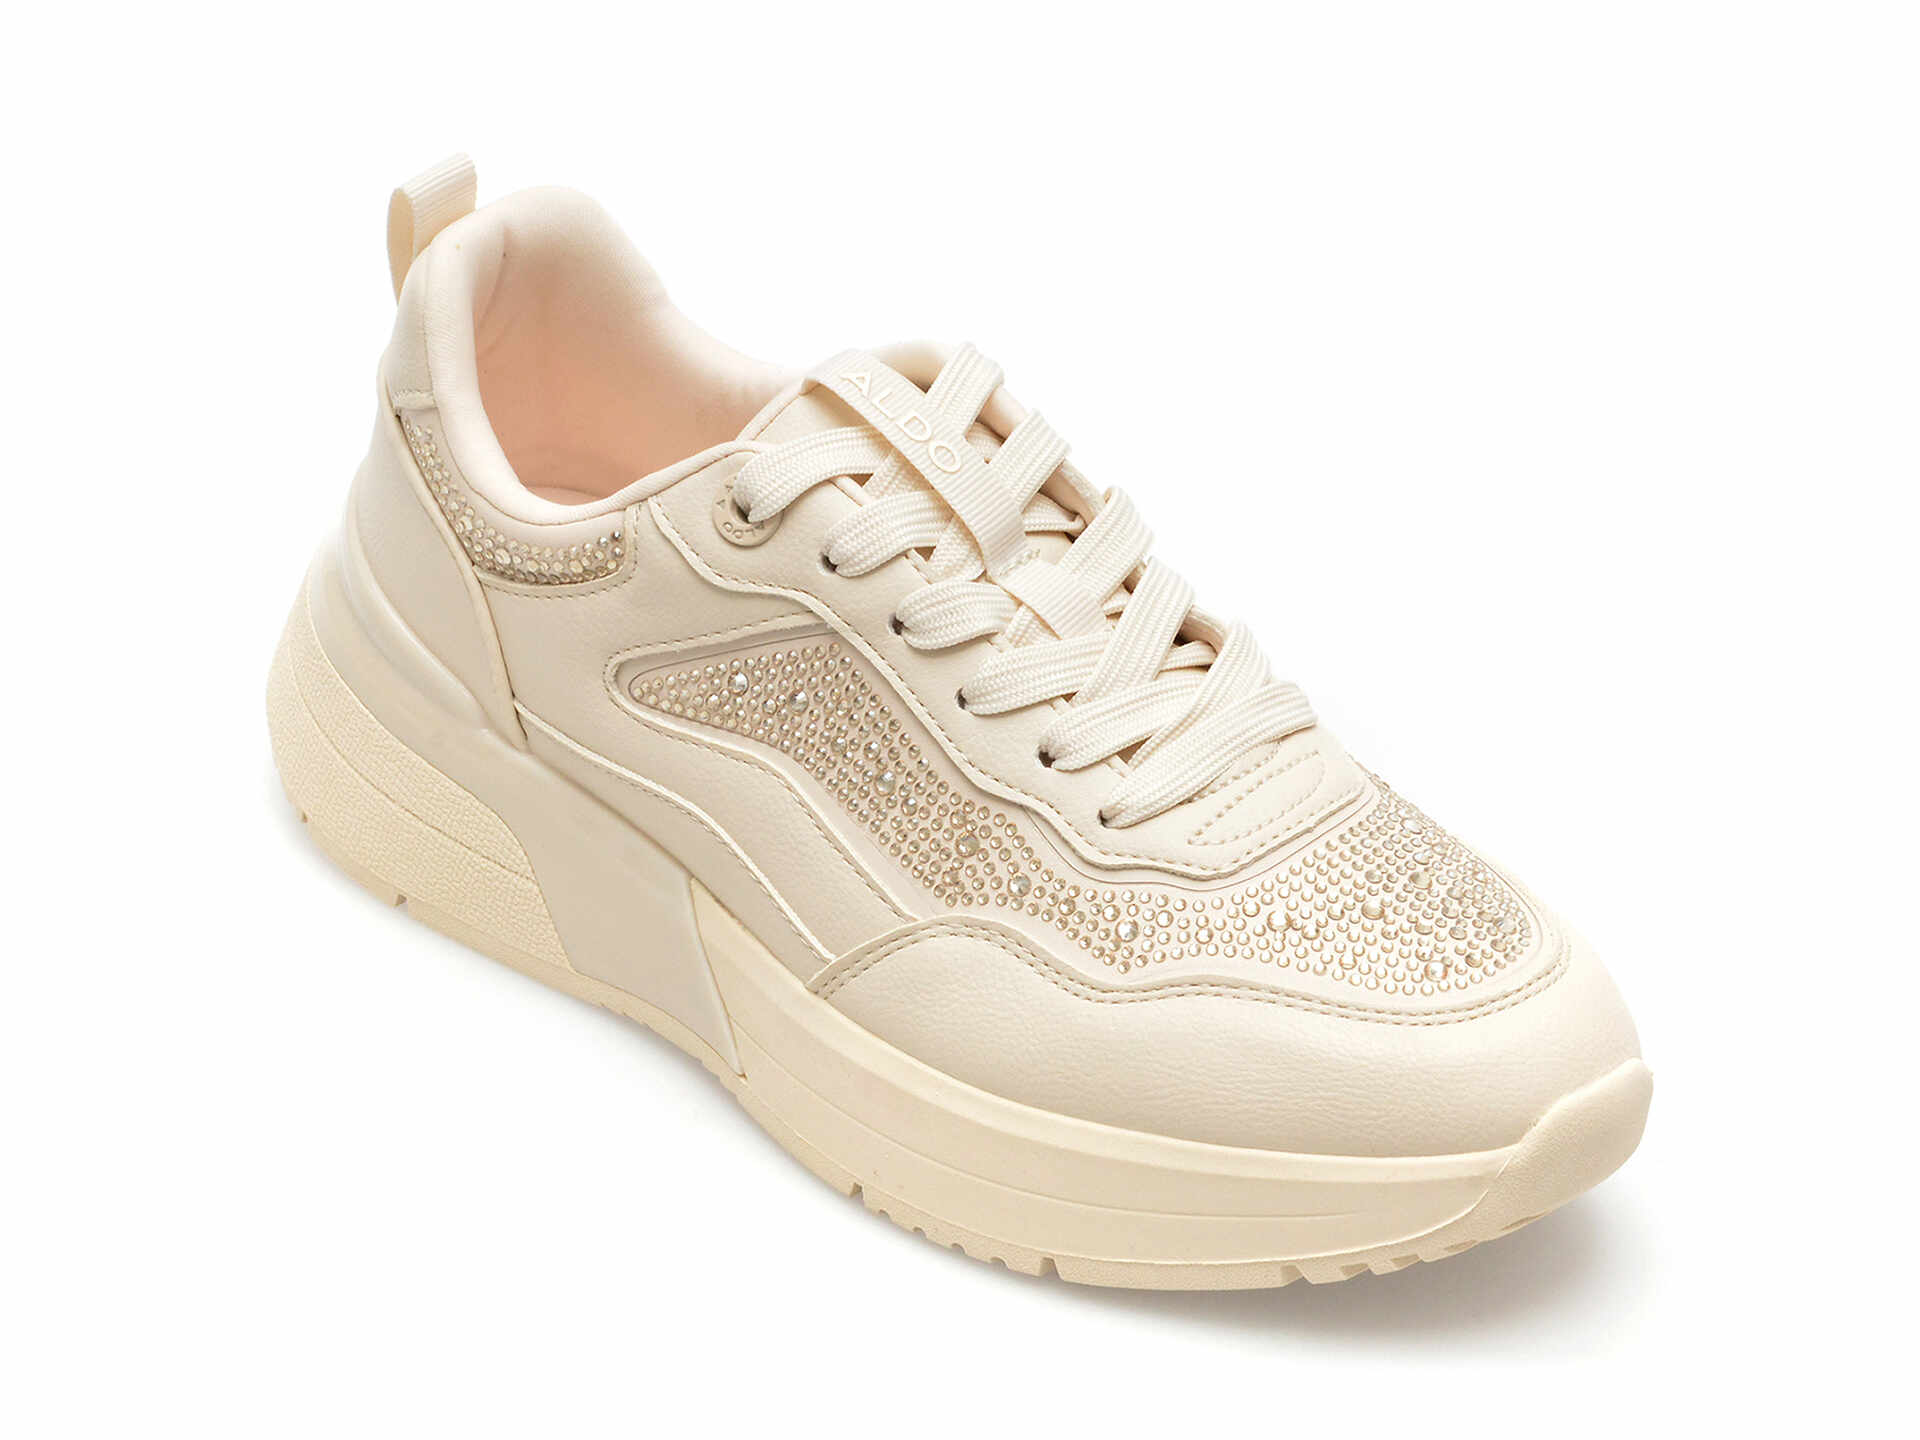 Pantofi ALDO albi, DYLANA981, din piele ecologica